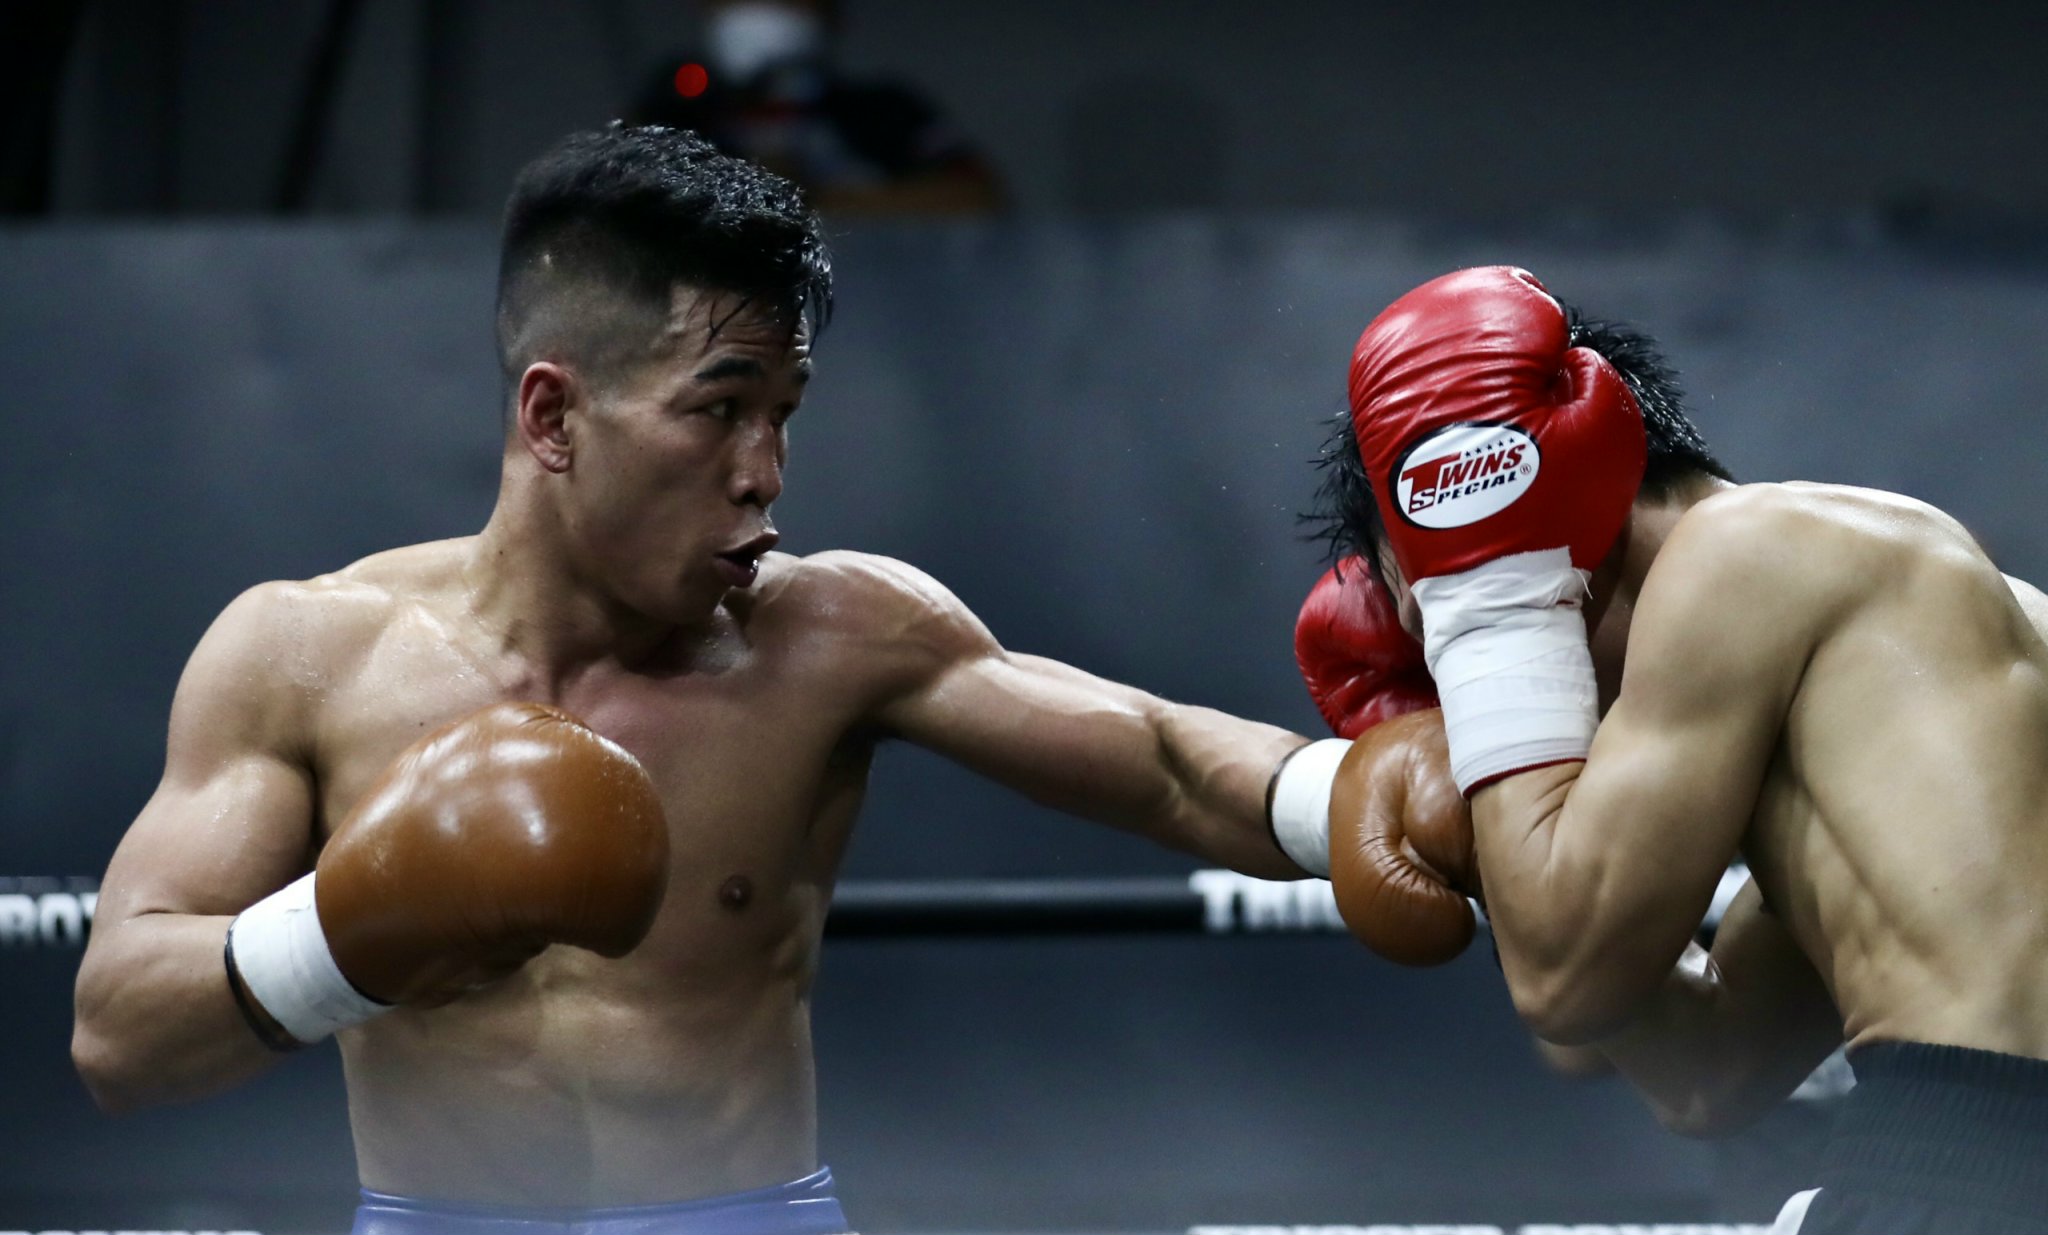 Knock-out ‘độc cô cầu bại’ Thái Lan, Trần Văn Thảo muốn dự SEA Games 31 và tranh đai IBA thế giới - Ảnh 2.